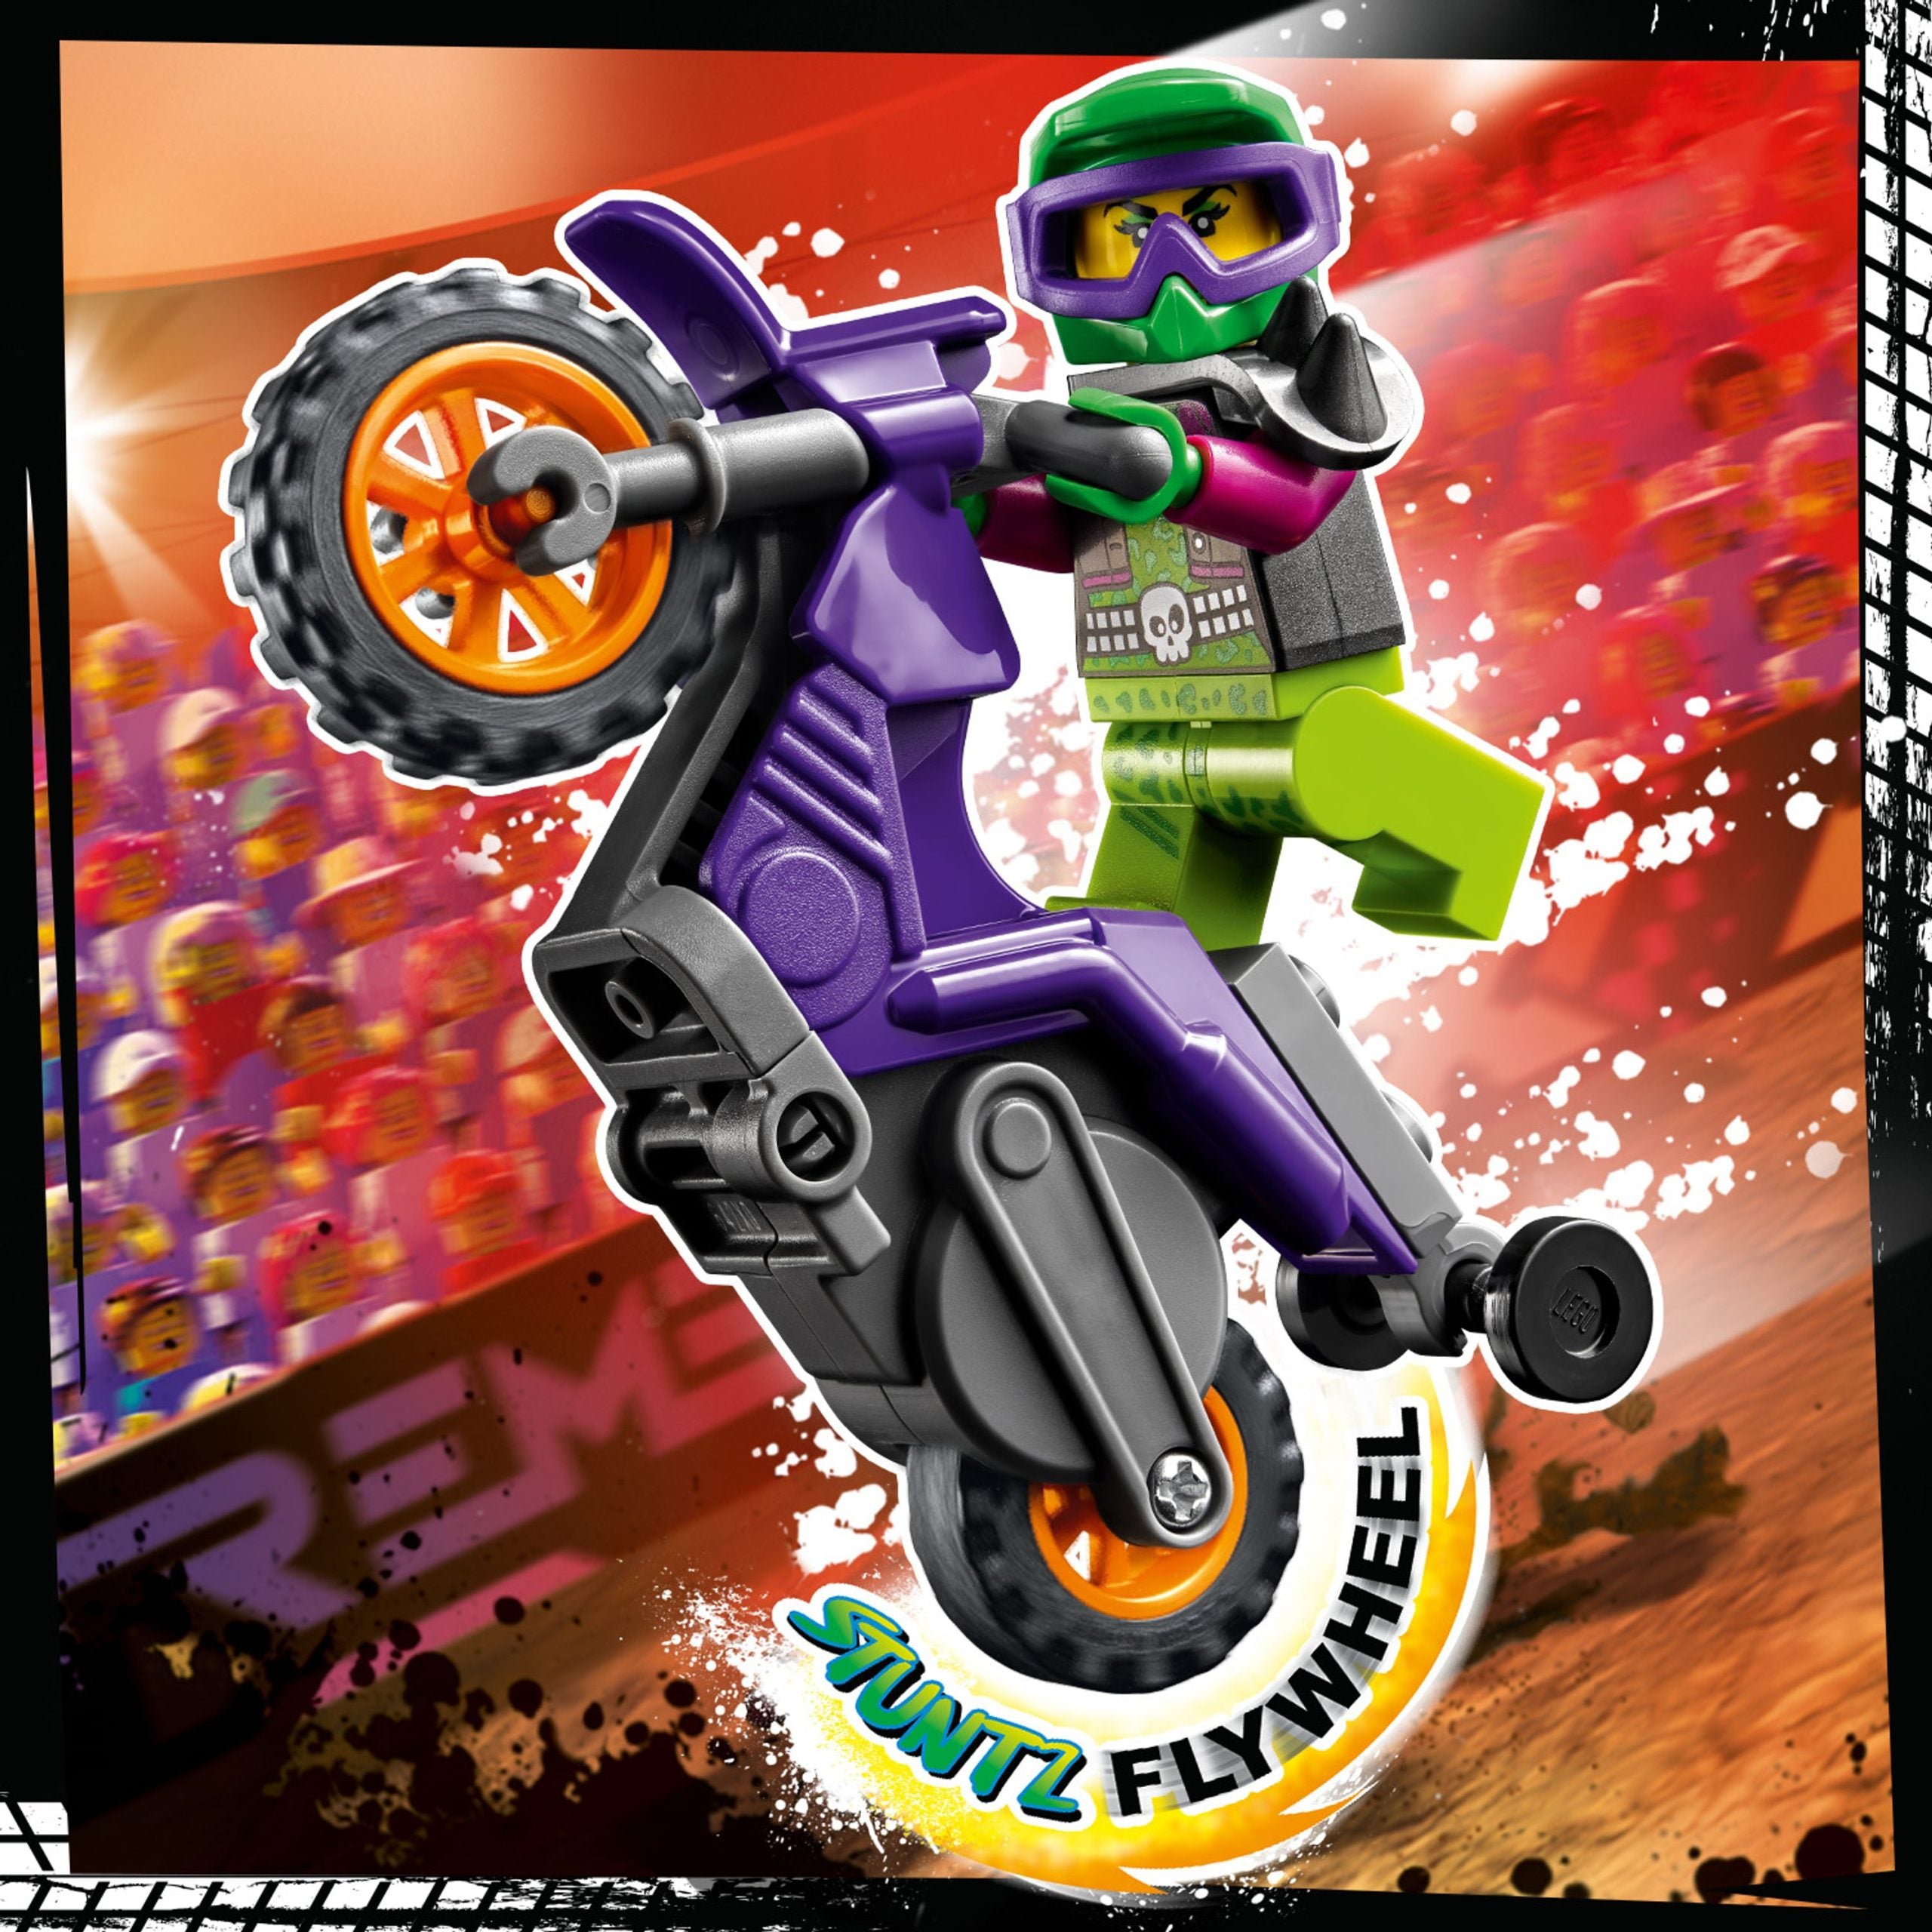 60296 LEGO® City - Stunt Bike da impennata